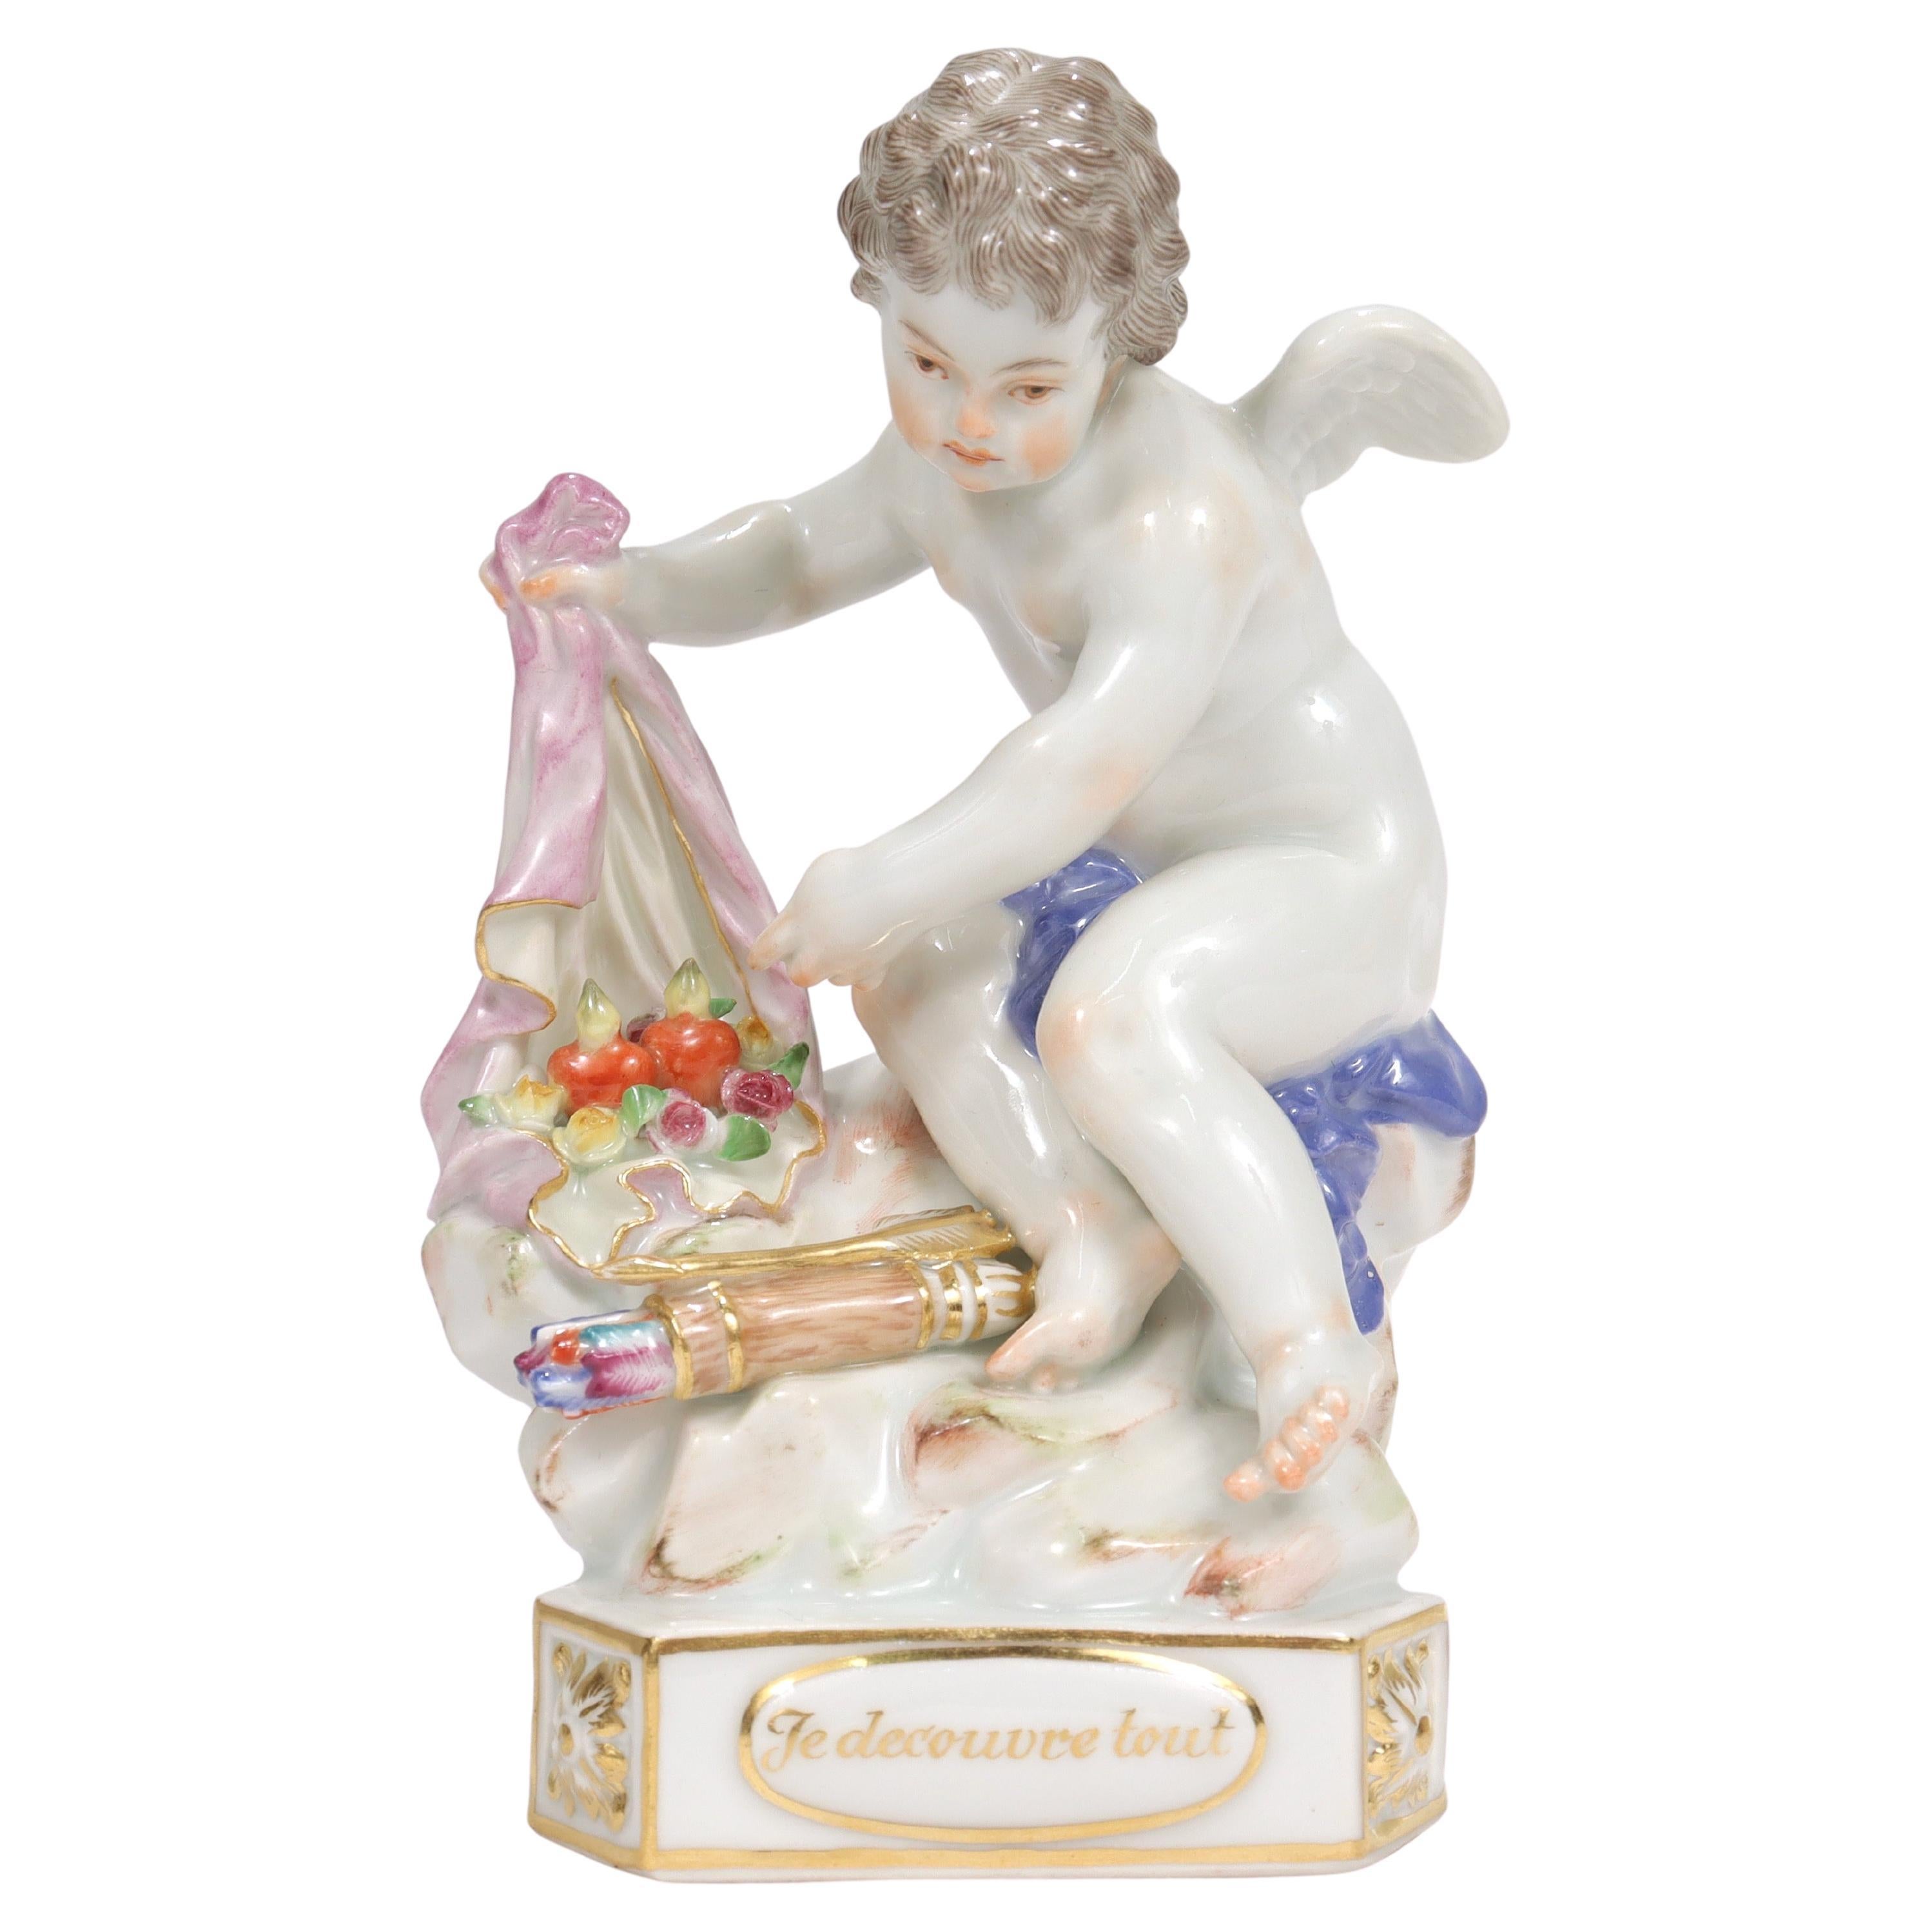 Ancienne figurine de chérubin en porcelaine de Meissen Motto « Je decouvre tout » Modèle F13